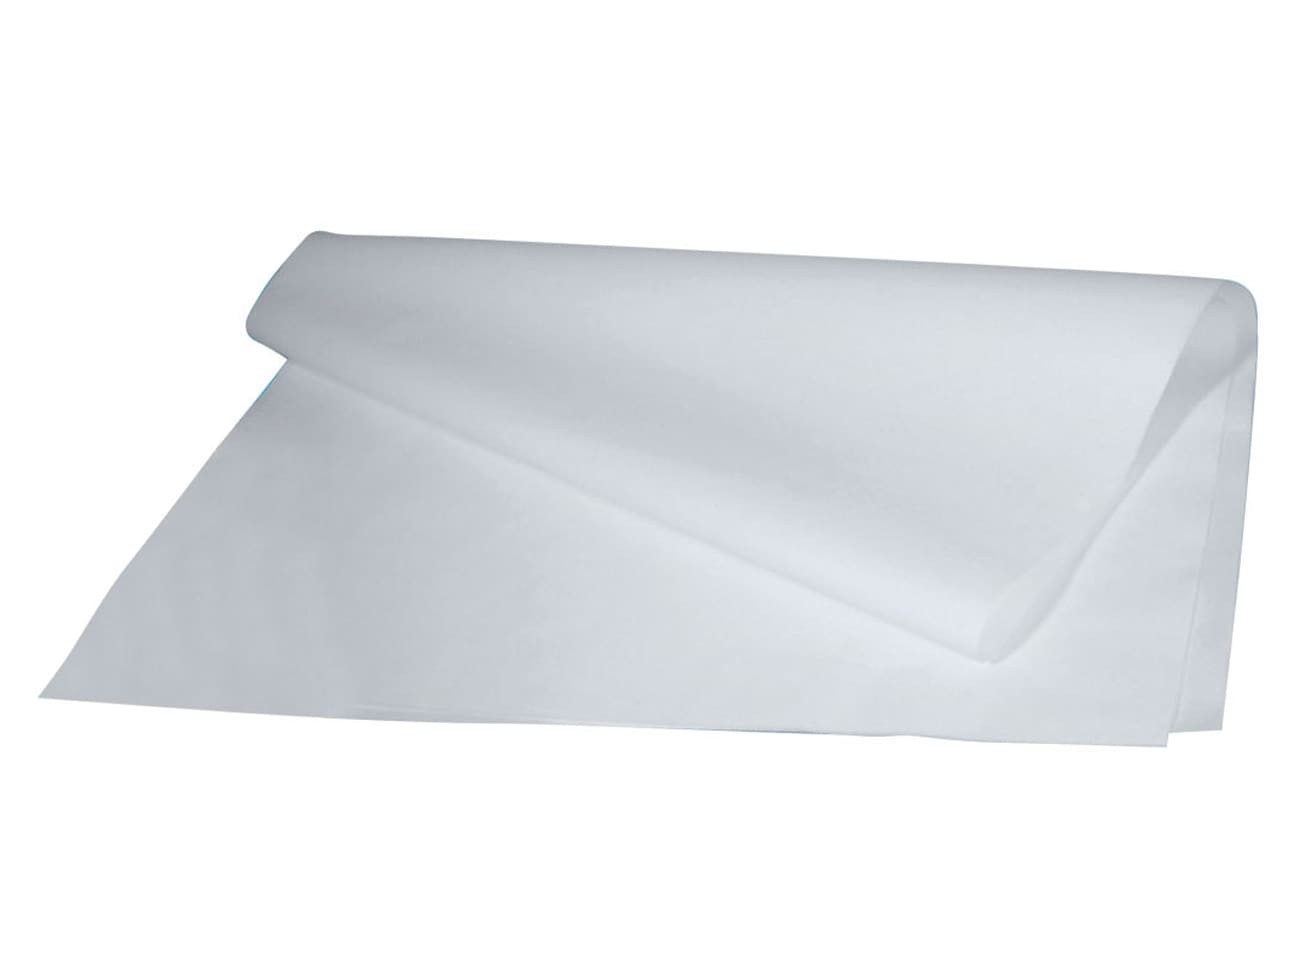 Caissettes pour éclairs (x 1000) - papier sulfurisé - Mille raies - Mallard  Ferrière - Meilleur du Chef